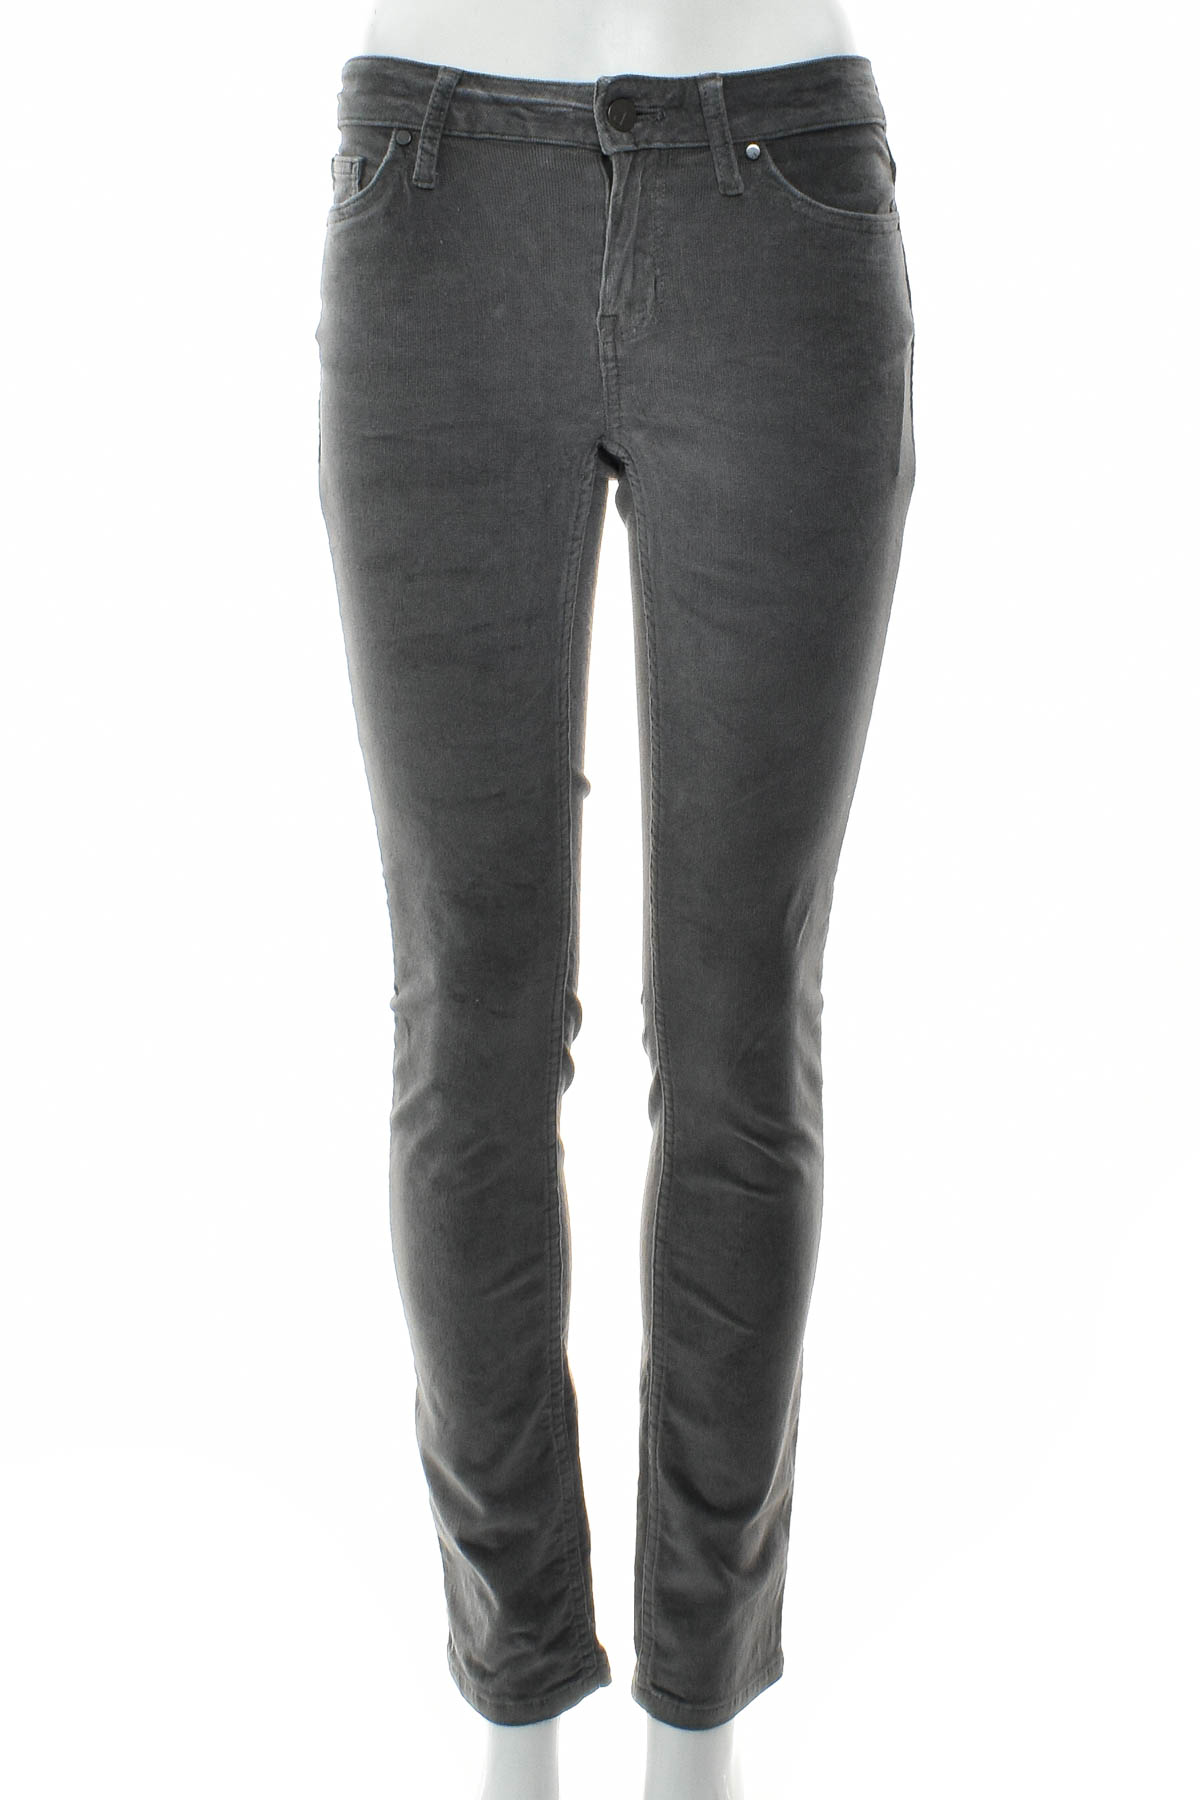 Spodnie damskie - Calvin Klein Jeans - 0